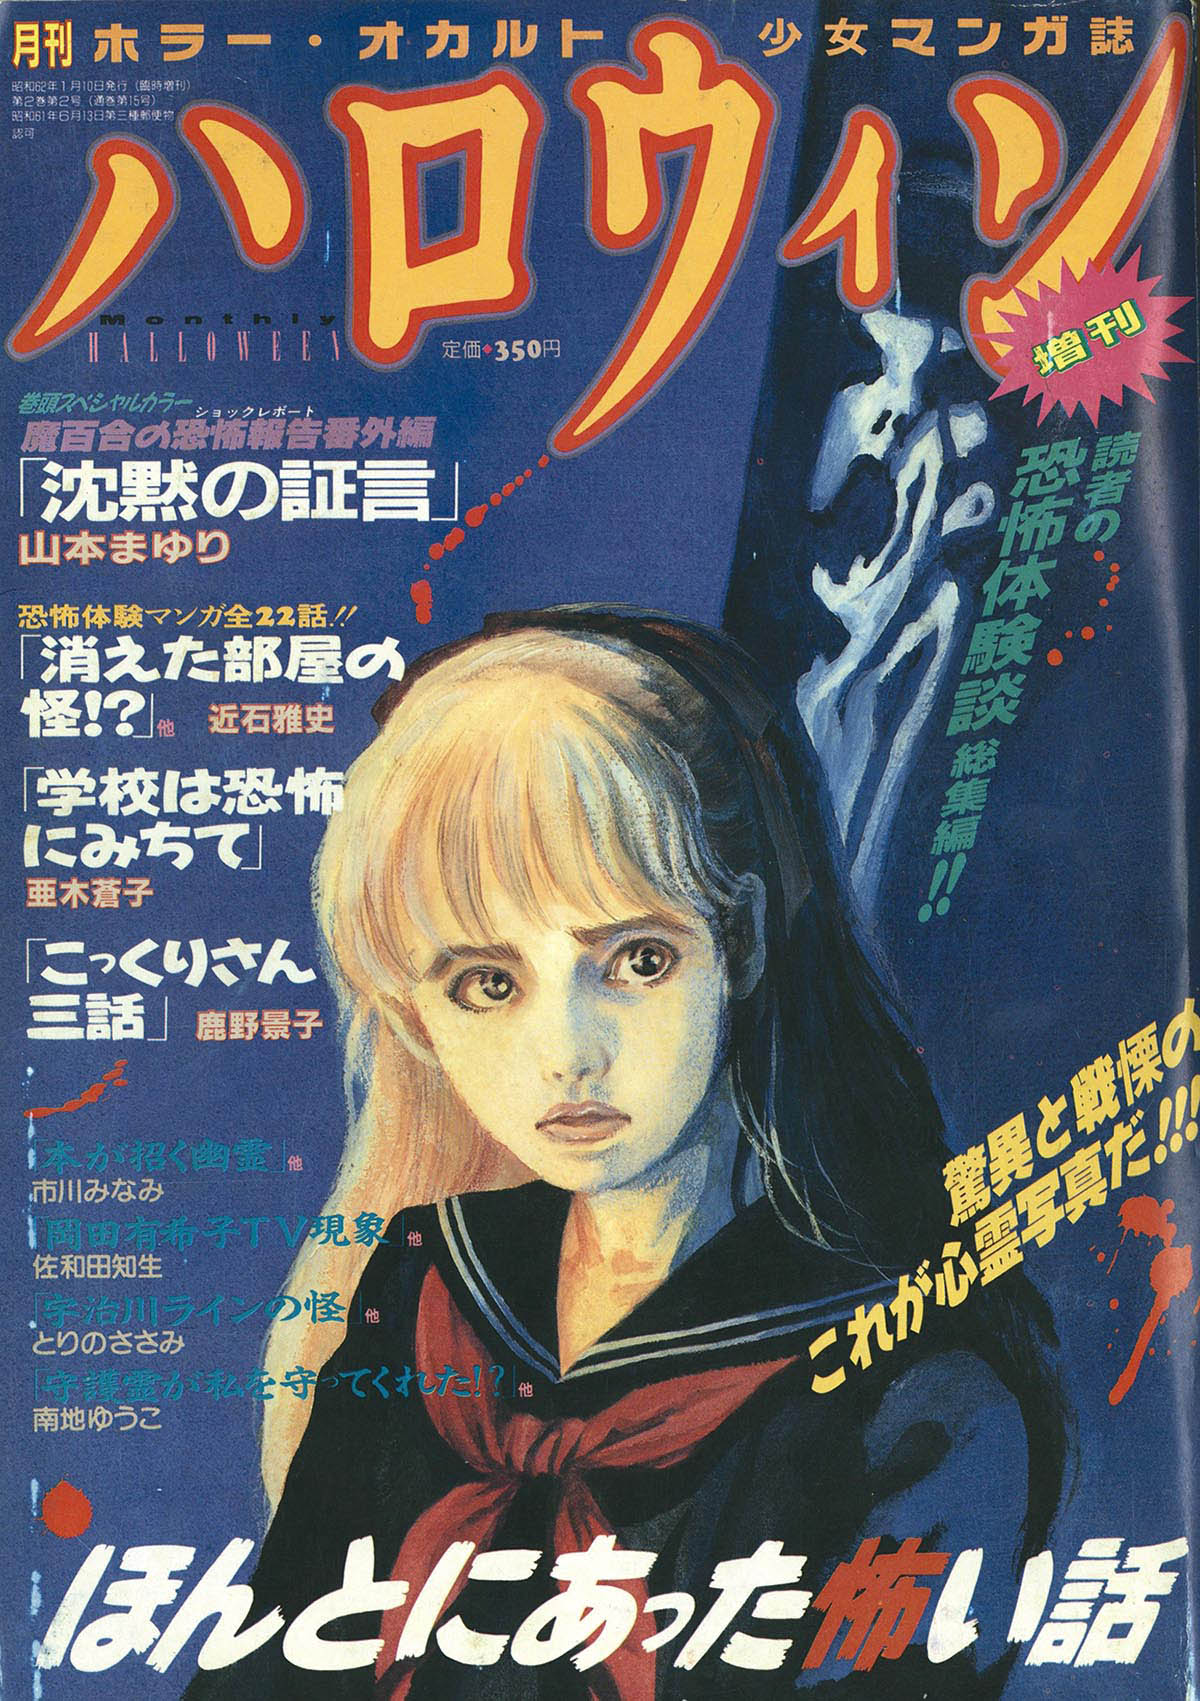 9805] 月刊ハロウィン増刊 ほんとにあった怖い話 1987(S62)01.10